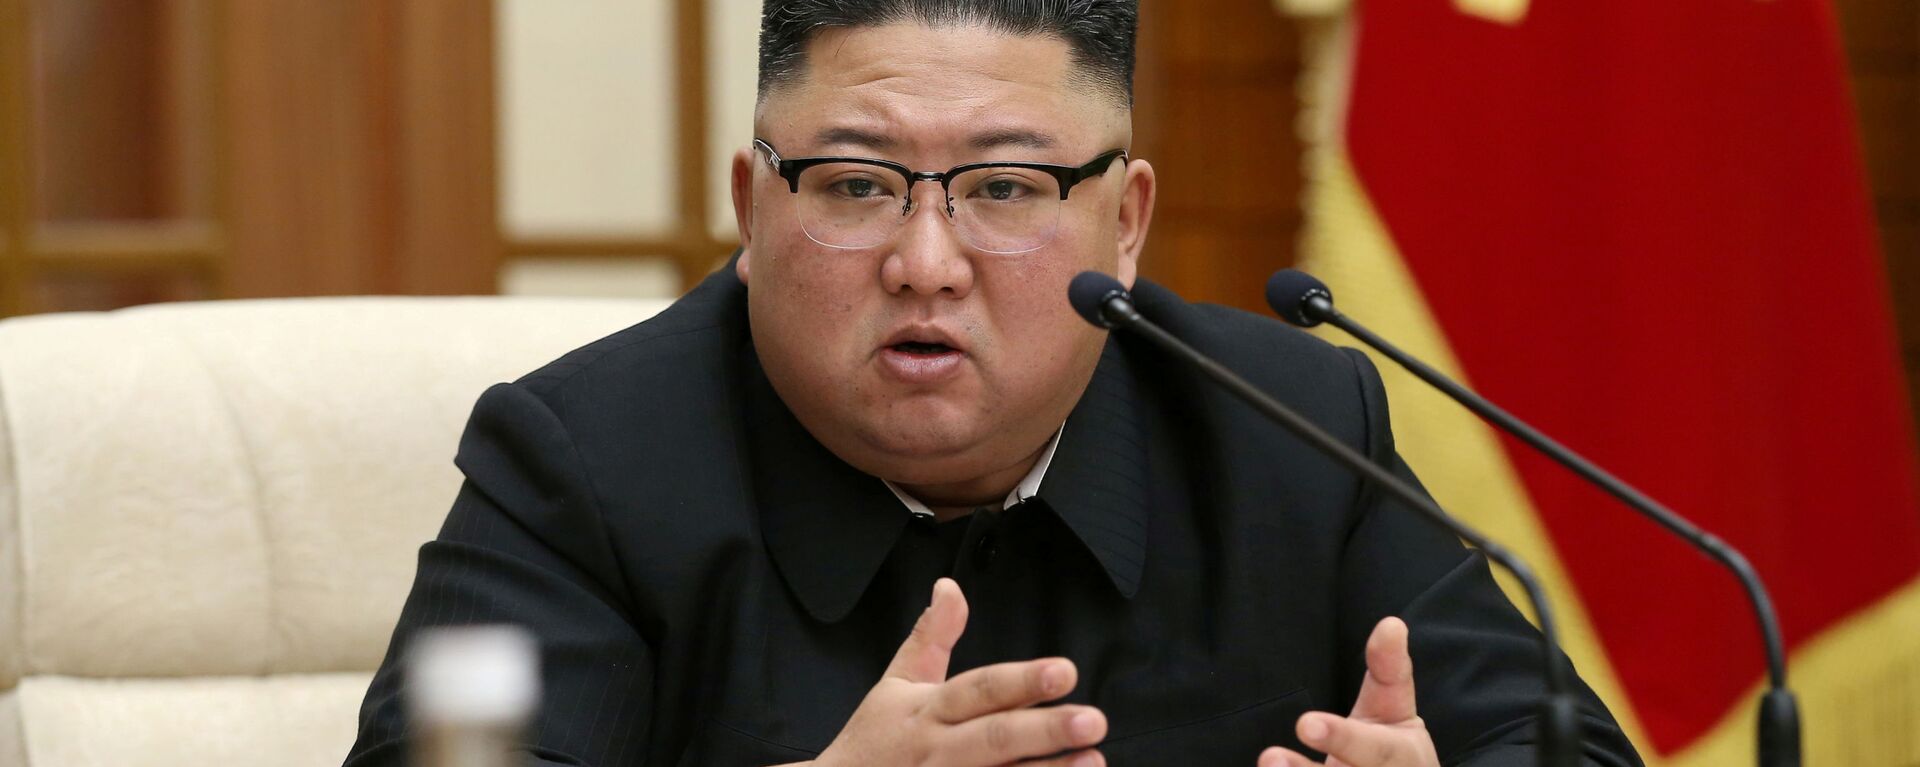 El líder norcoreano, Kim Jong-un - Sputnik Mundo, 1920, 28.07.2021